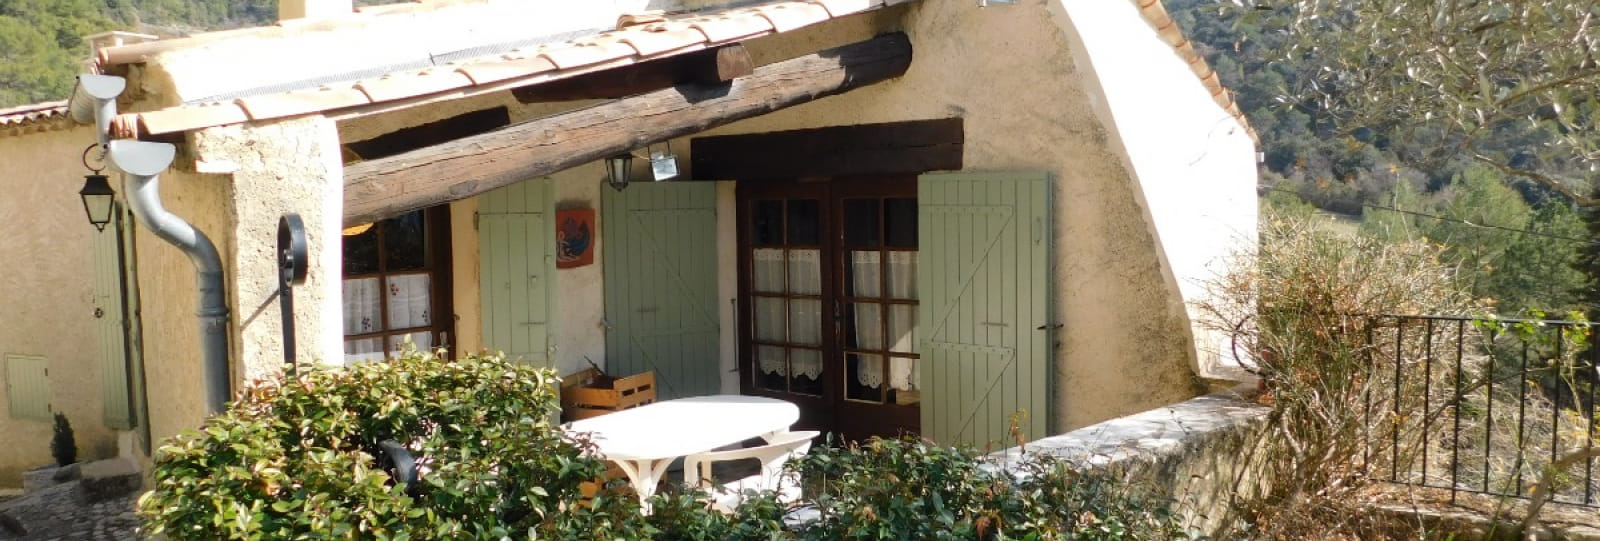 La Fenière - Apartment for 2/4 people in a quiet village in Drôme Provençale